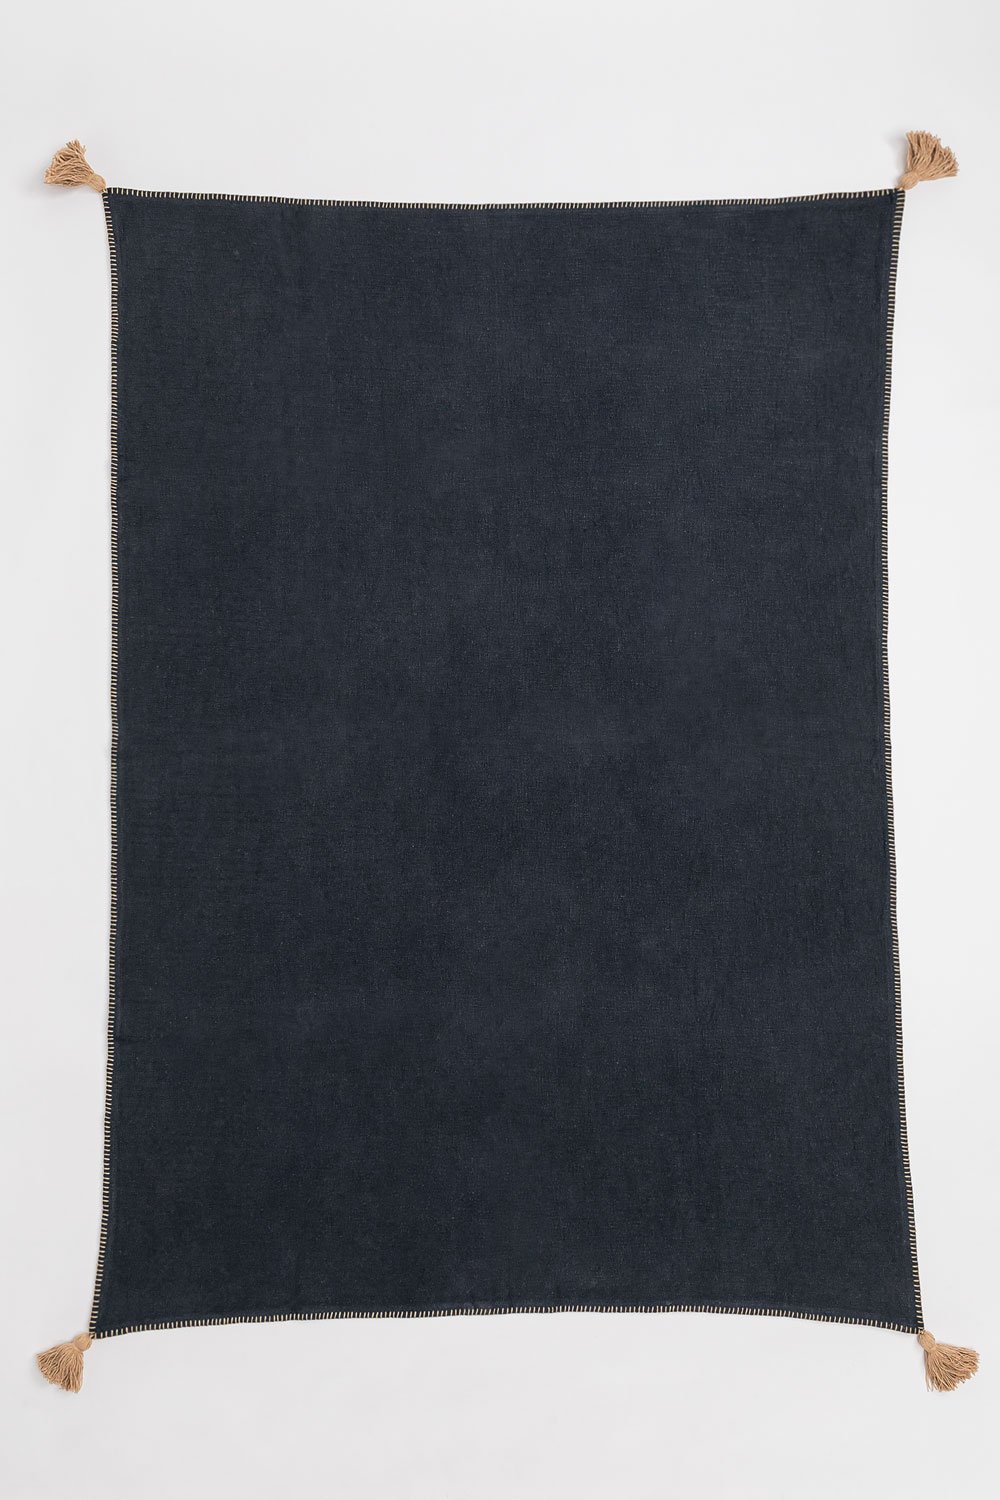 Geruite deken van katoen Paraiba, galerij beeld 1